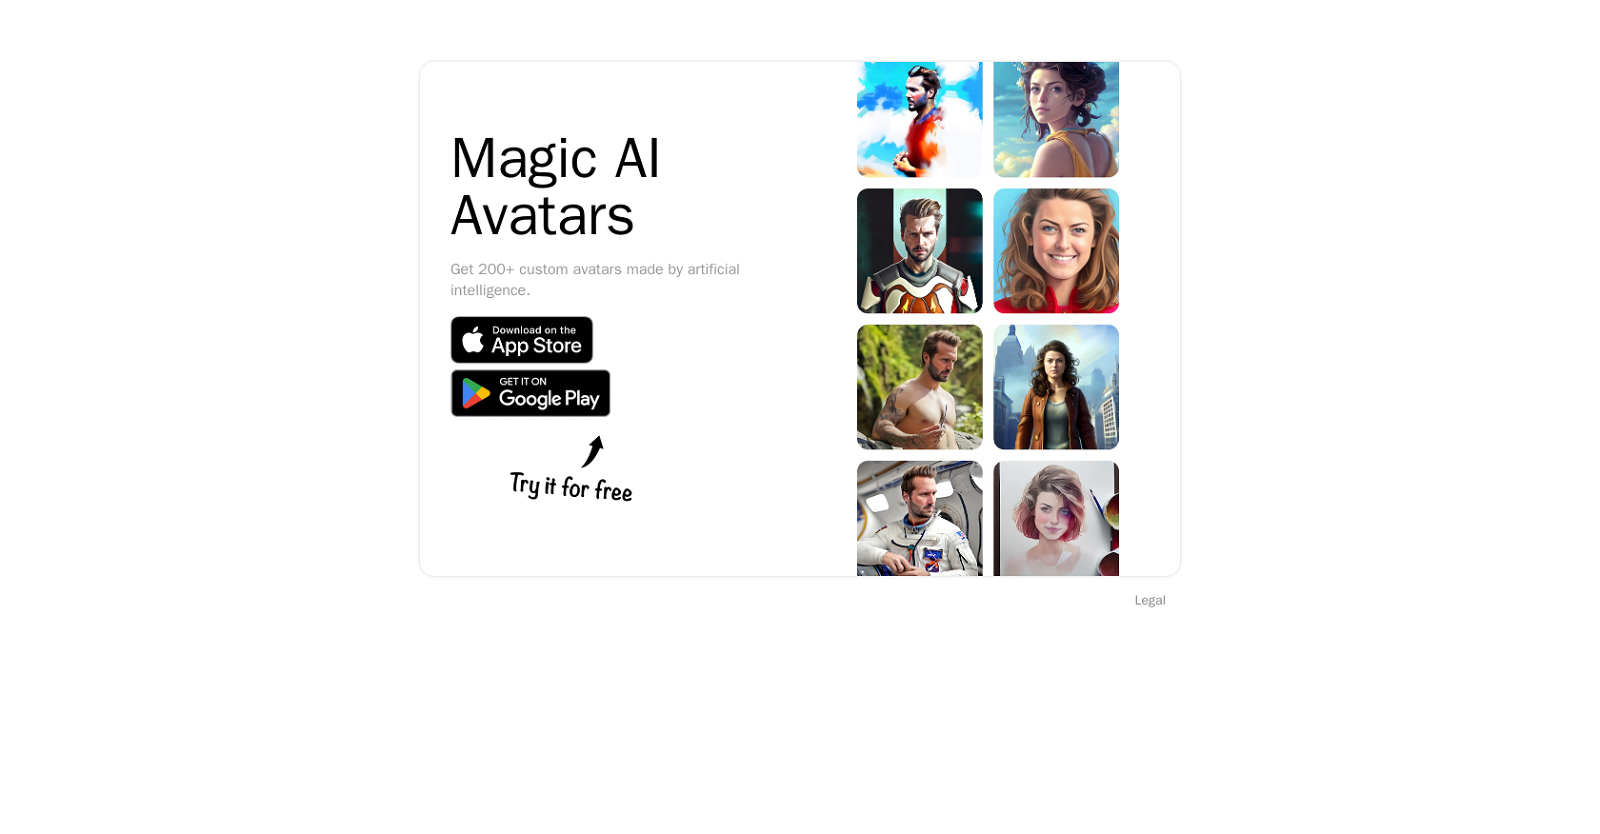 Magic AI Avatars website